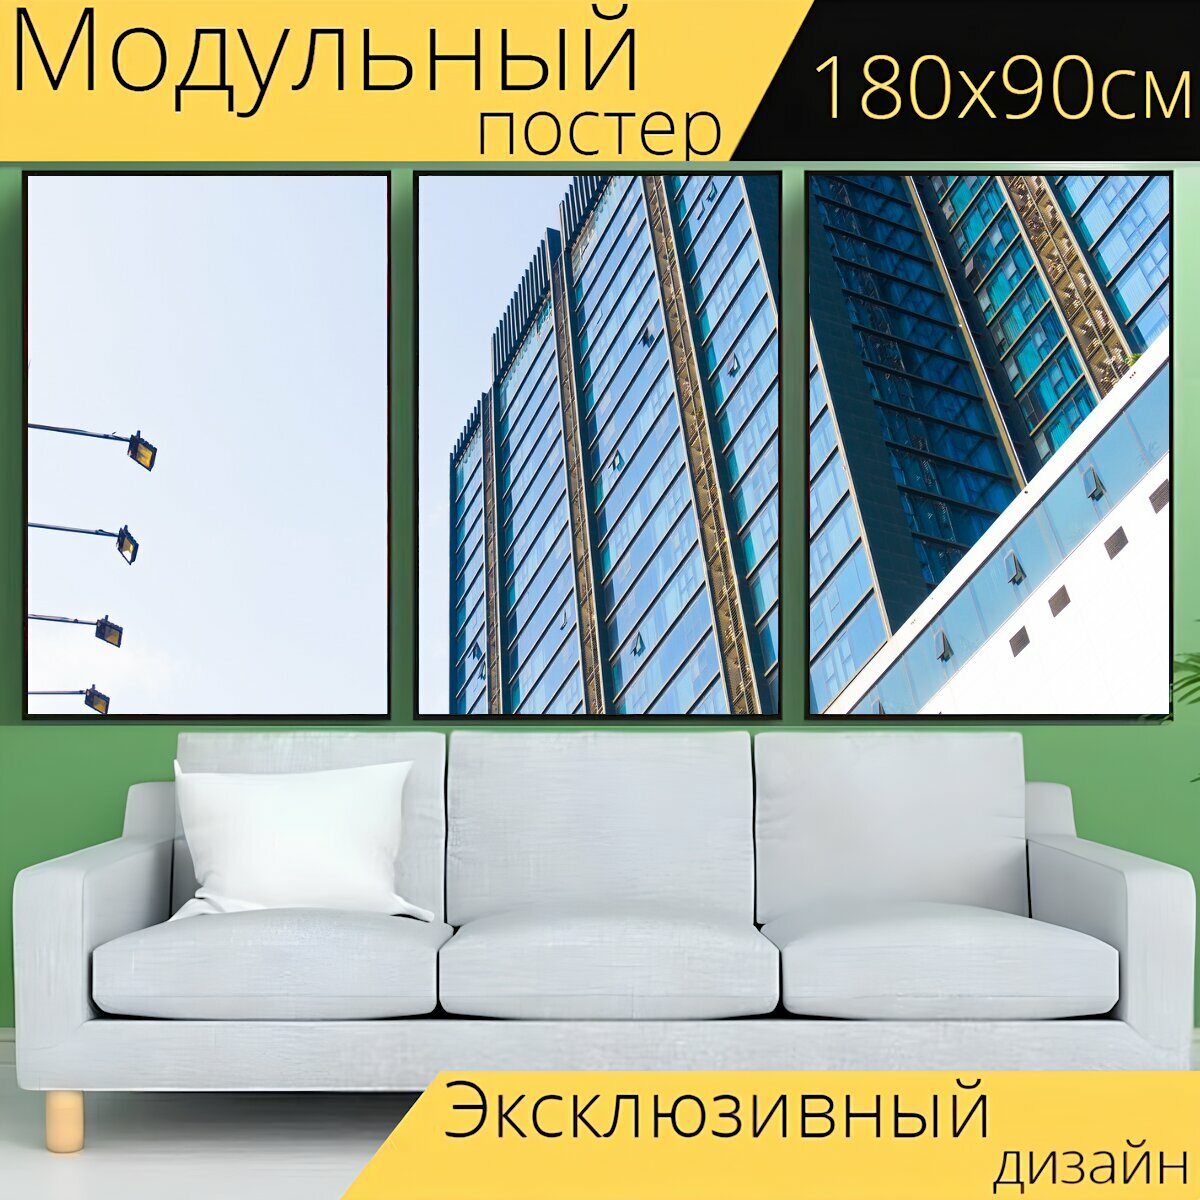 Модульный постер "Высотный строительство фасад" 180 x 90 см. для интерьера